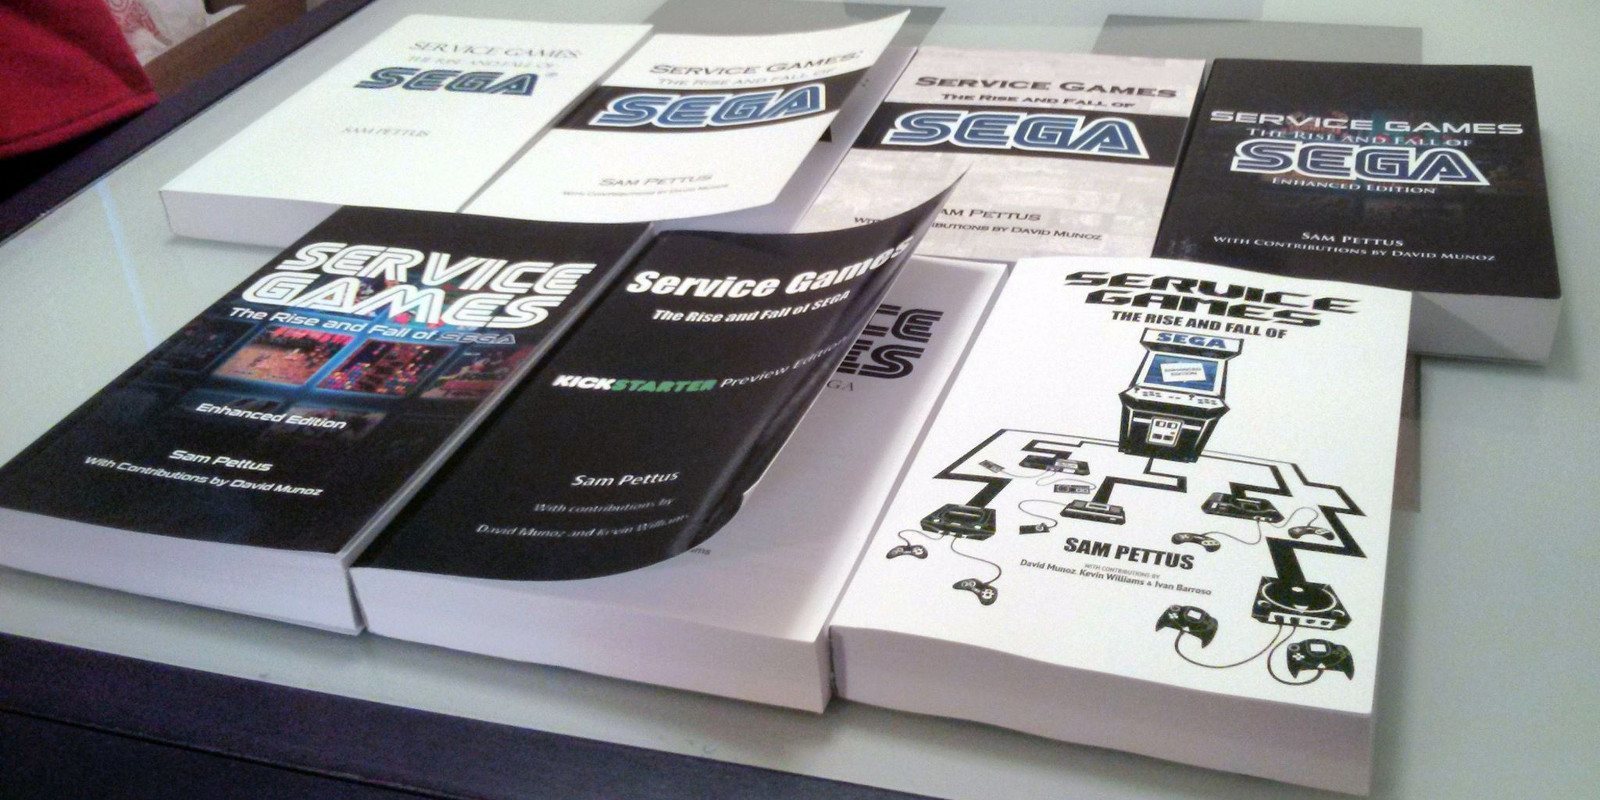 La editorial GamePress publicará el libro Service Games: El auge y caída de Sega